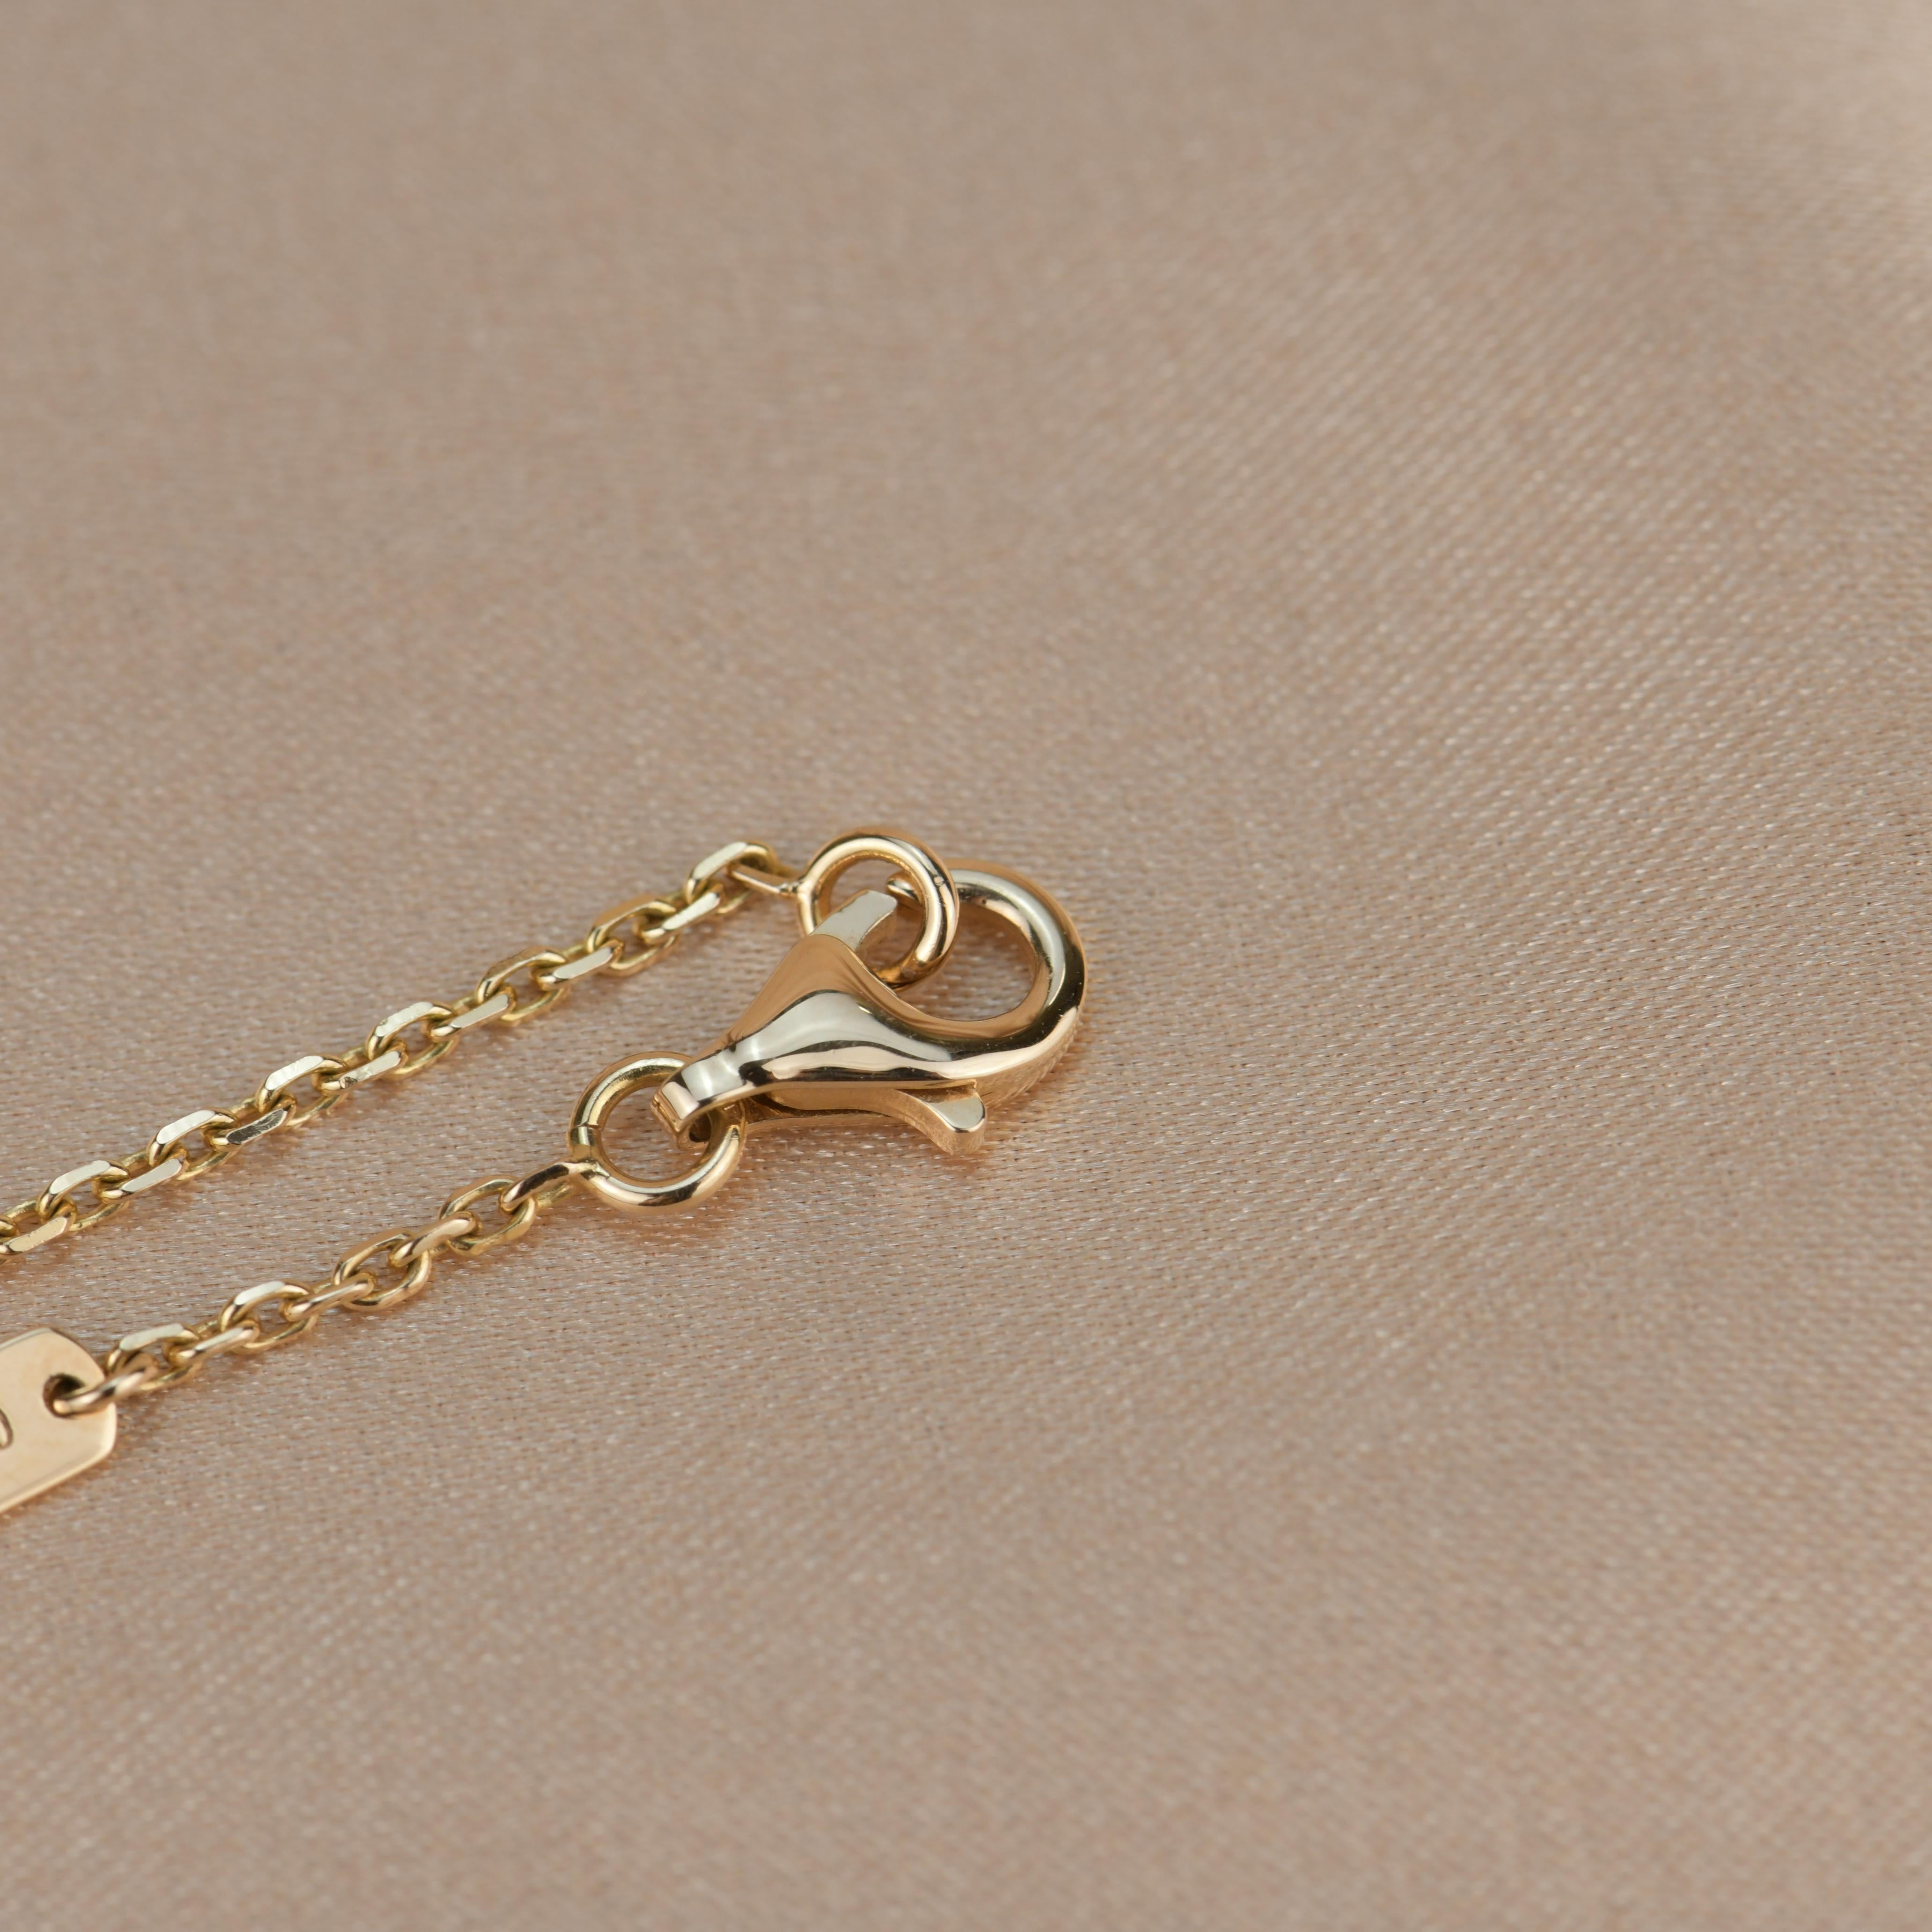 Van Cleef & Arpels Alhambra Rose Gold Pendant Necklace 1